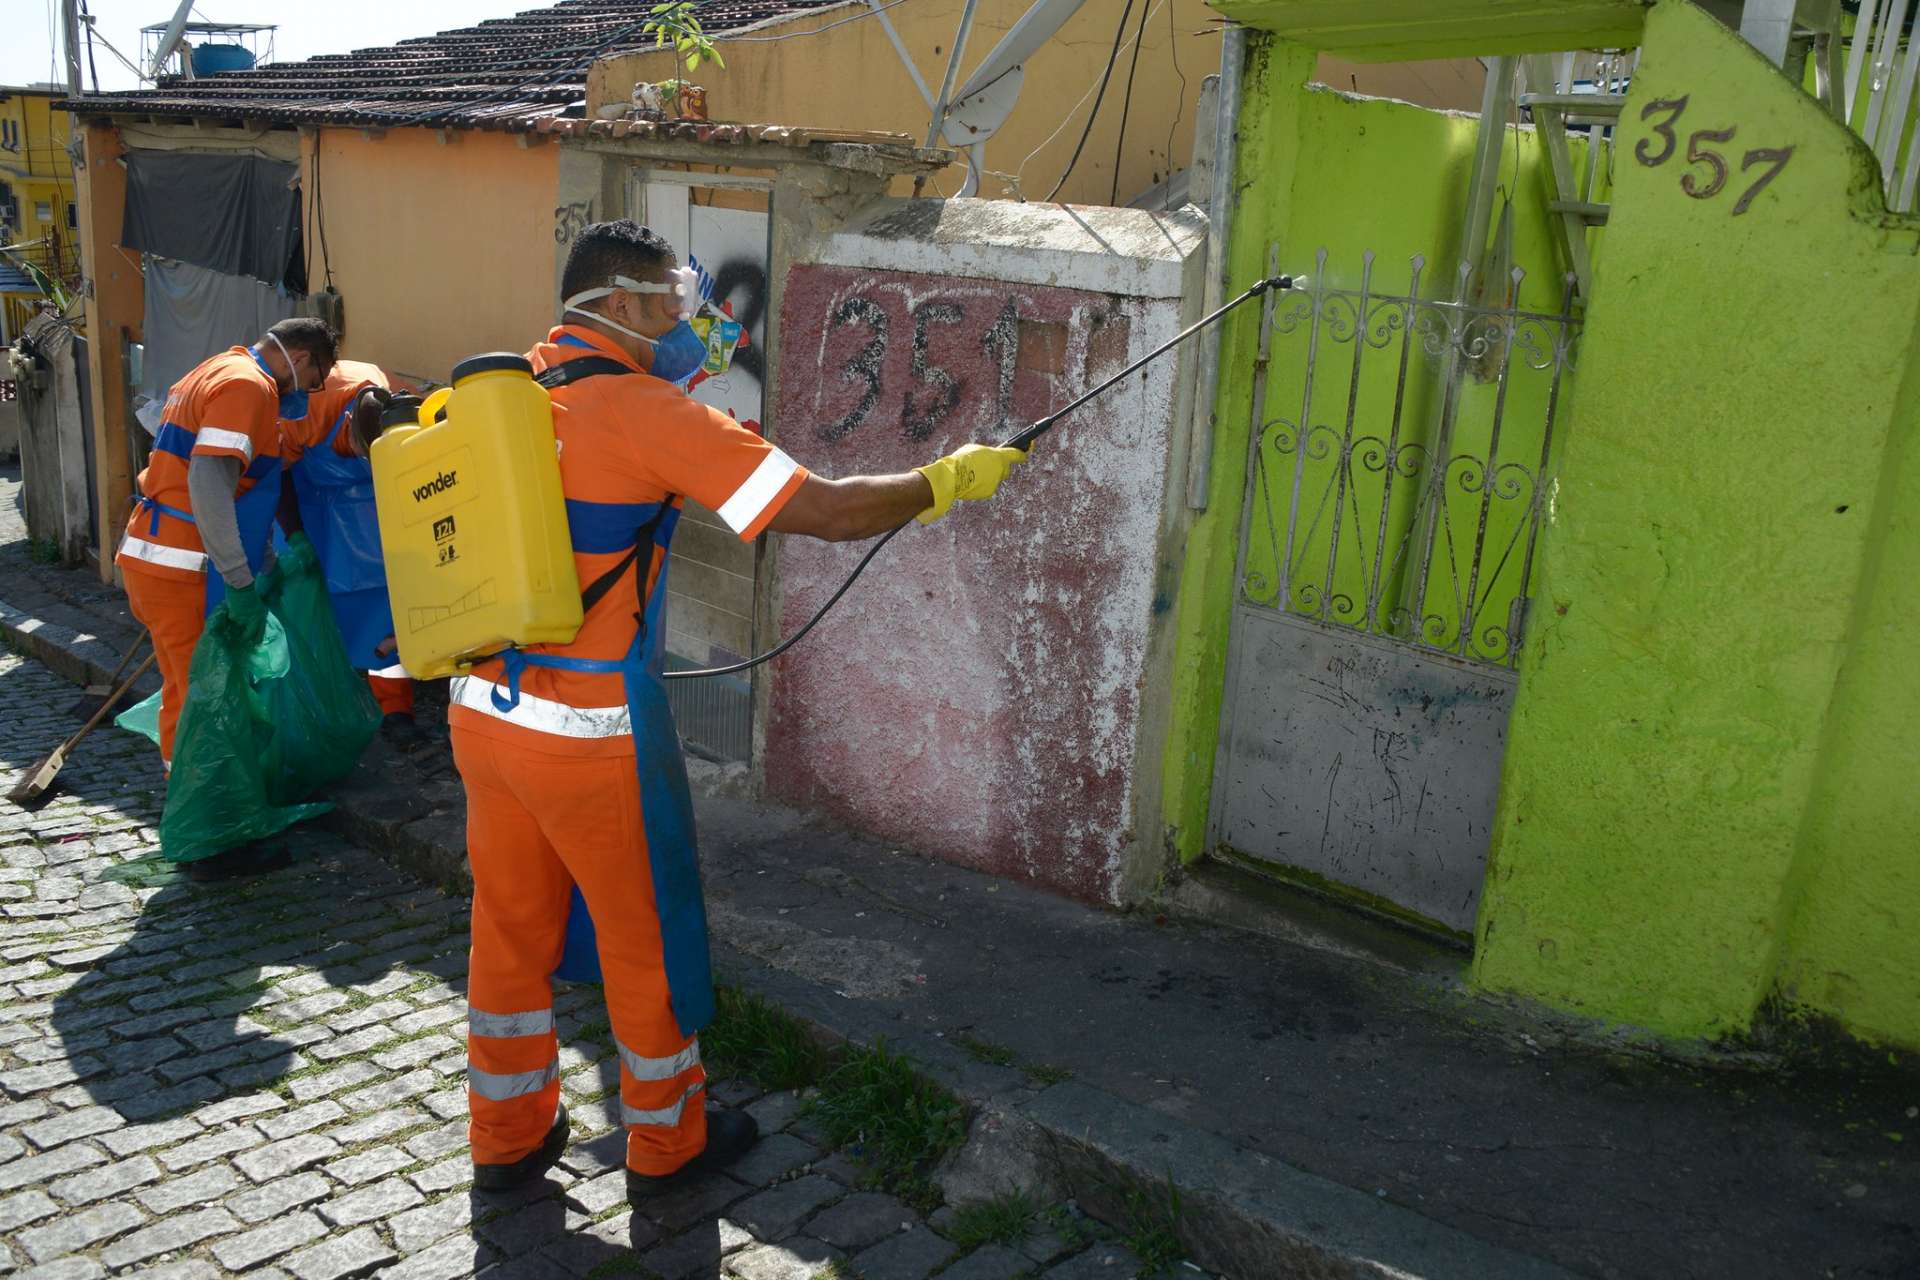 RJ: Ação social no bairro Cosme Velho pretende distribuir